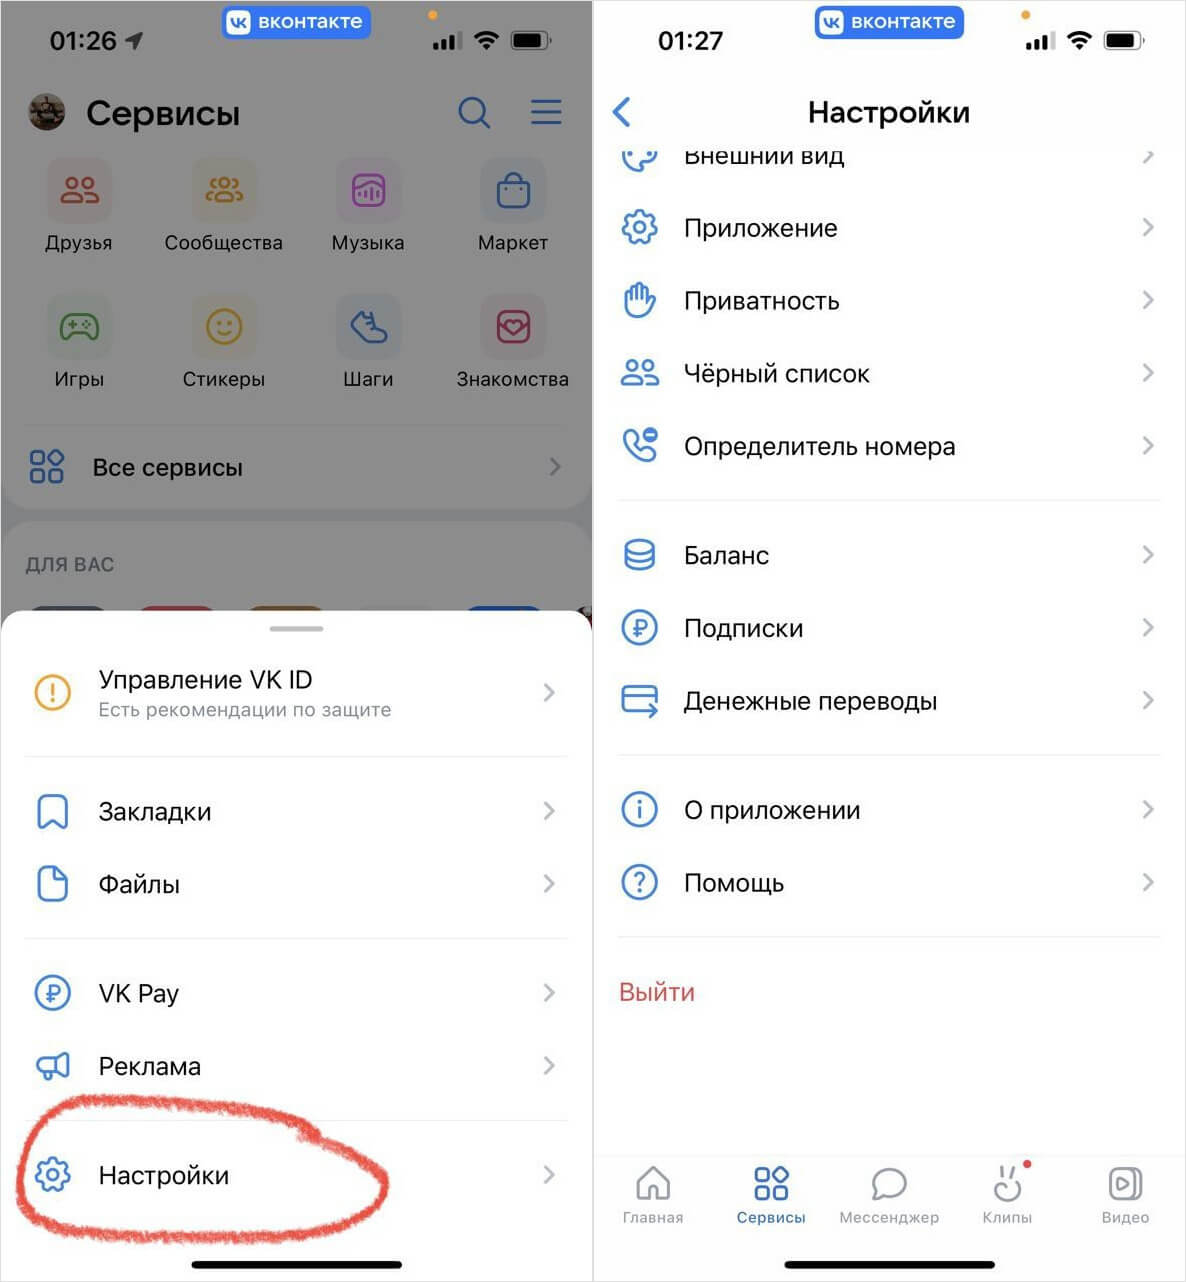 Как создать новую страницу ВКонтакте, если уже есть аккаунт